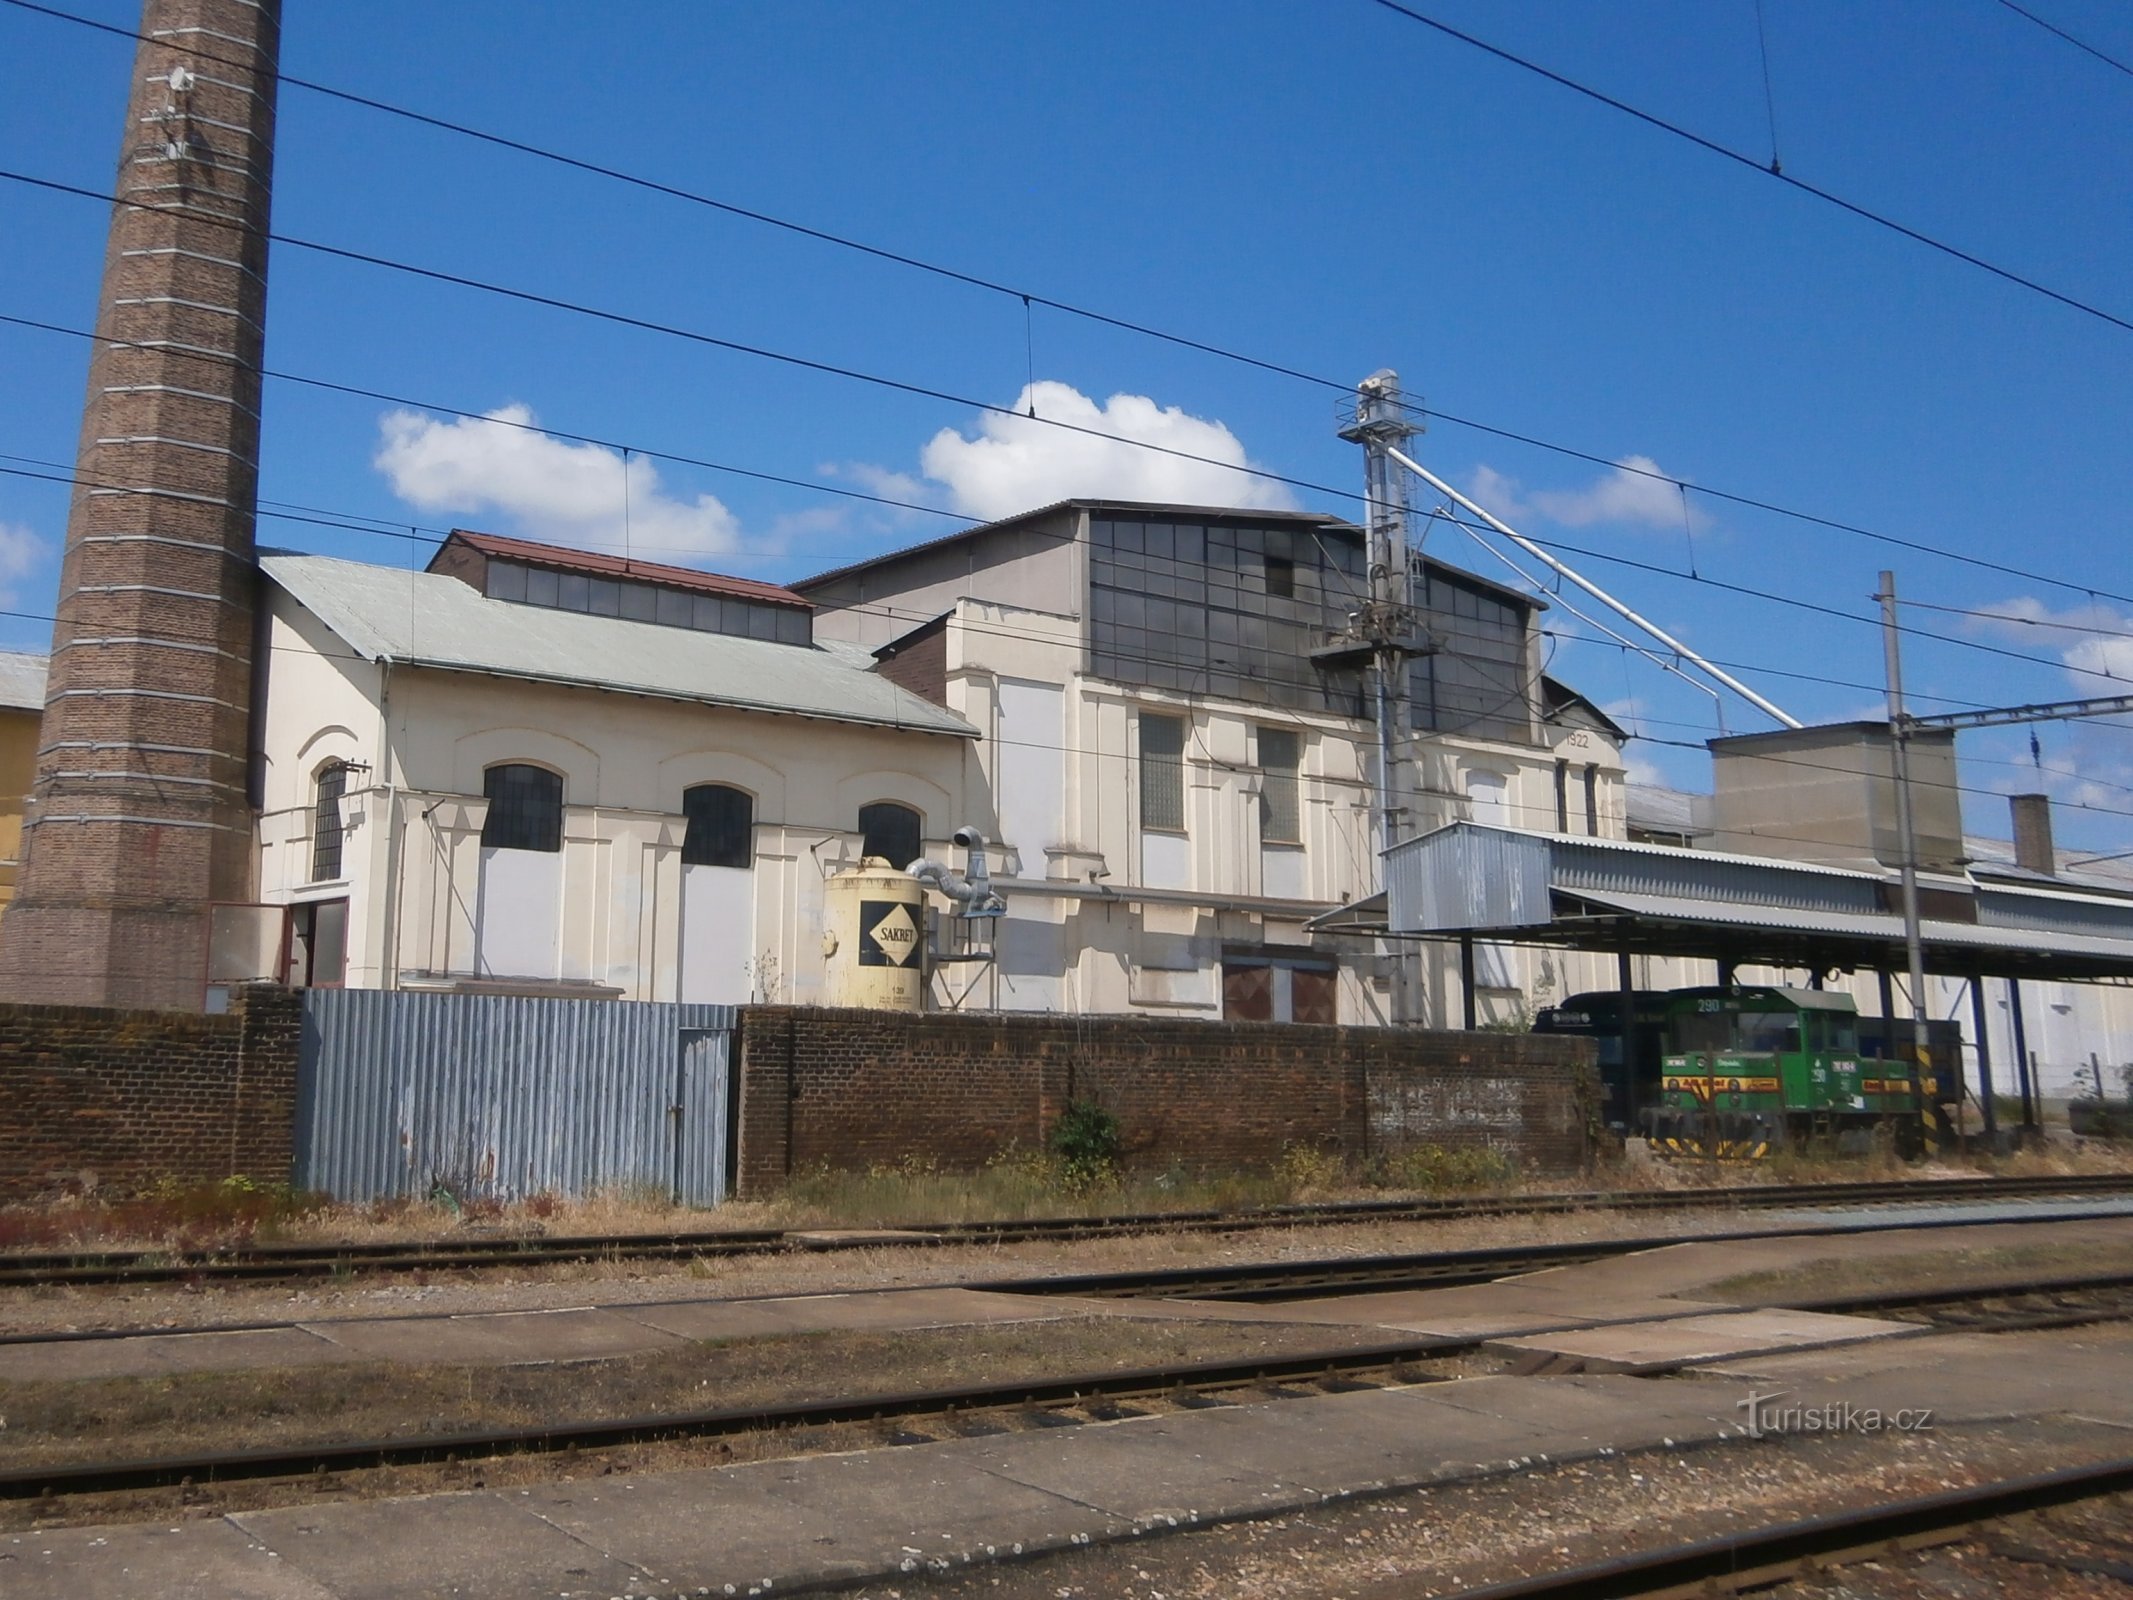 Fabrica comună de zahăr țărănească (Předměřice nad Labem)